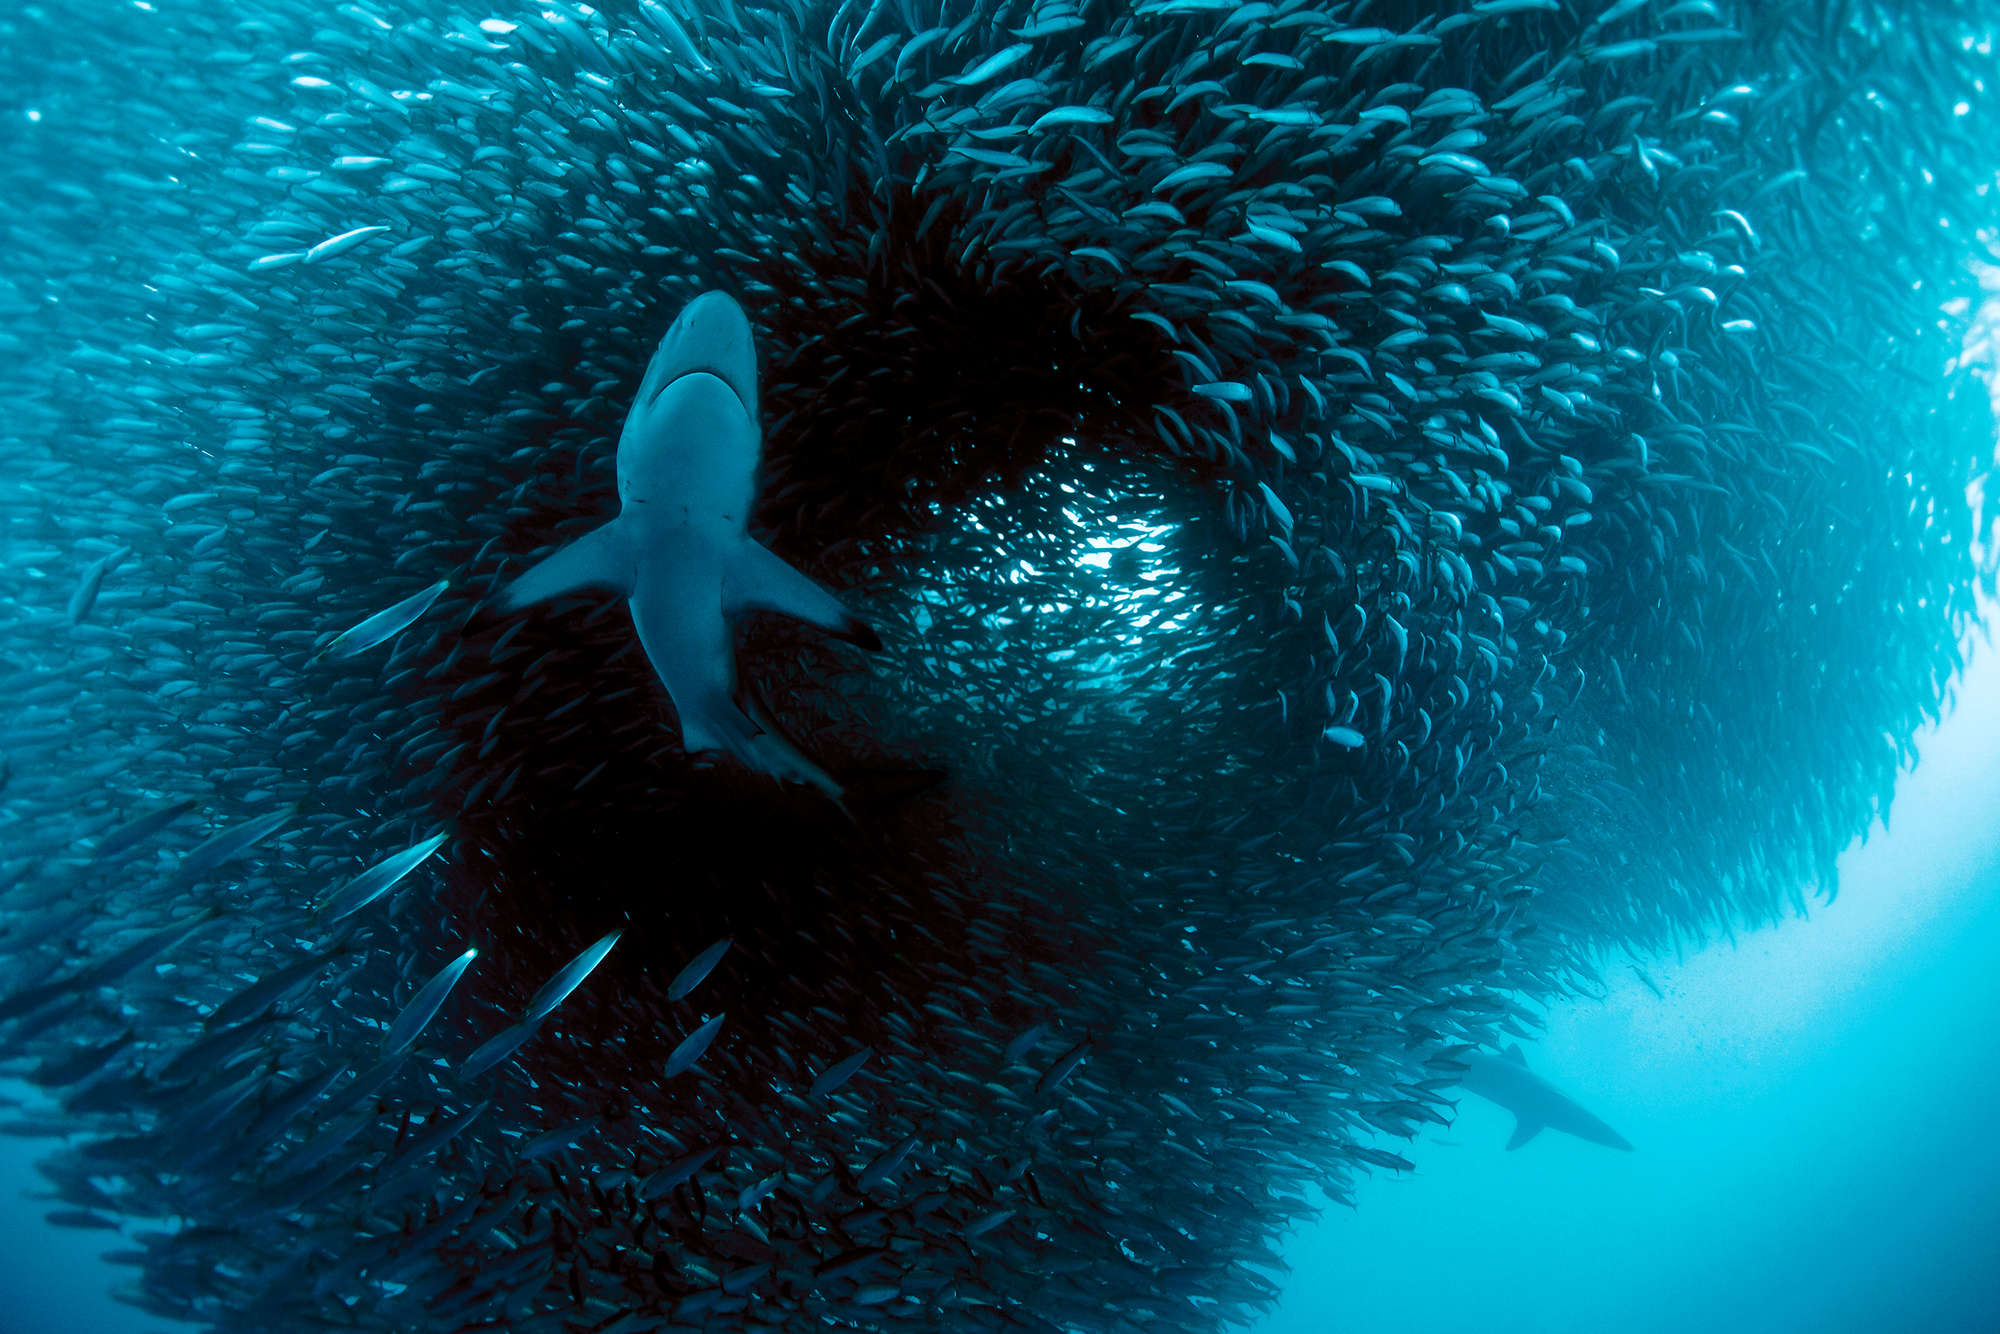             Fotomurali marino con caccia allo squalo su tessuto non tessuto testurizzato
        